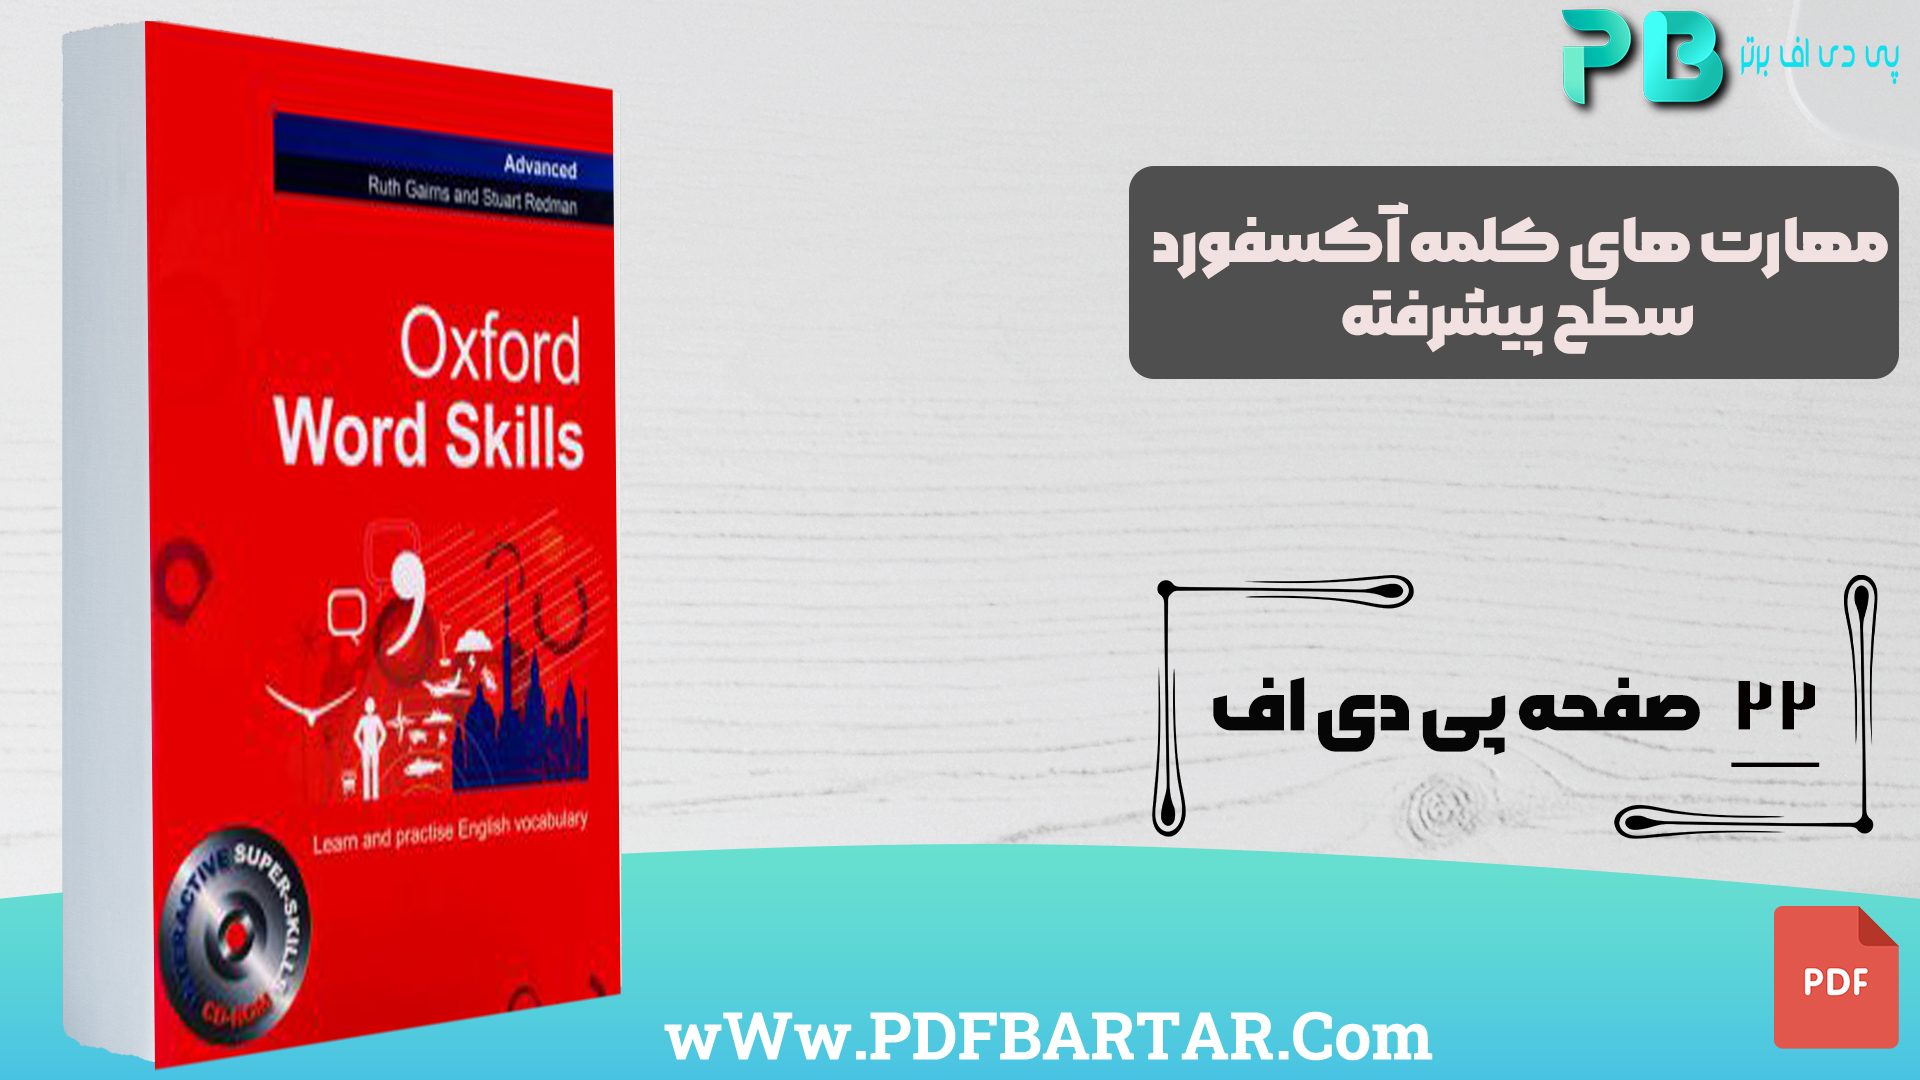 دانلود پی دی اف کتاب مهارت های کلمه آکسفورد سطح پیشرفته PDF